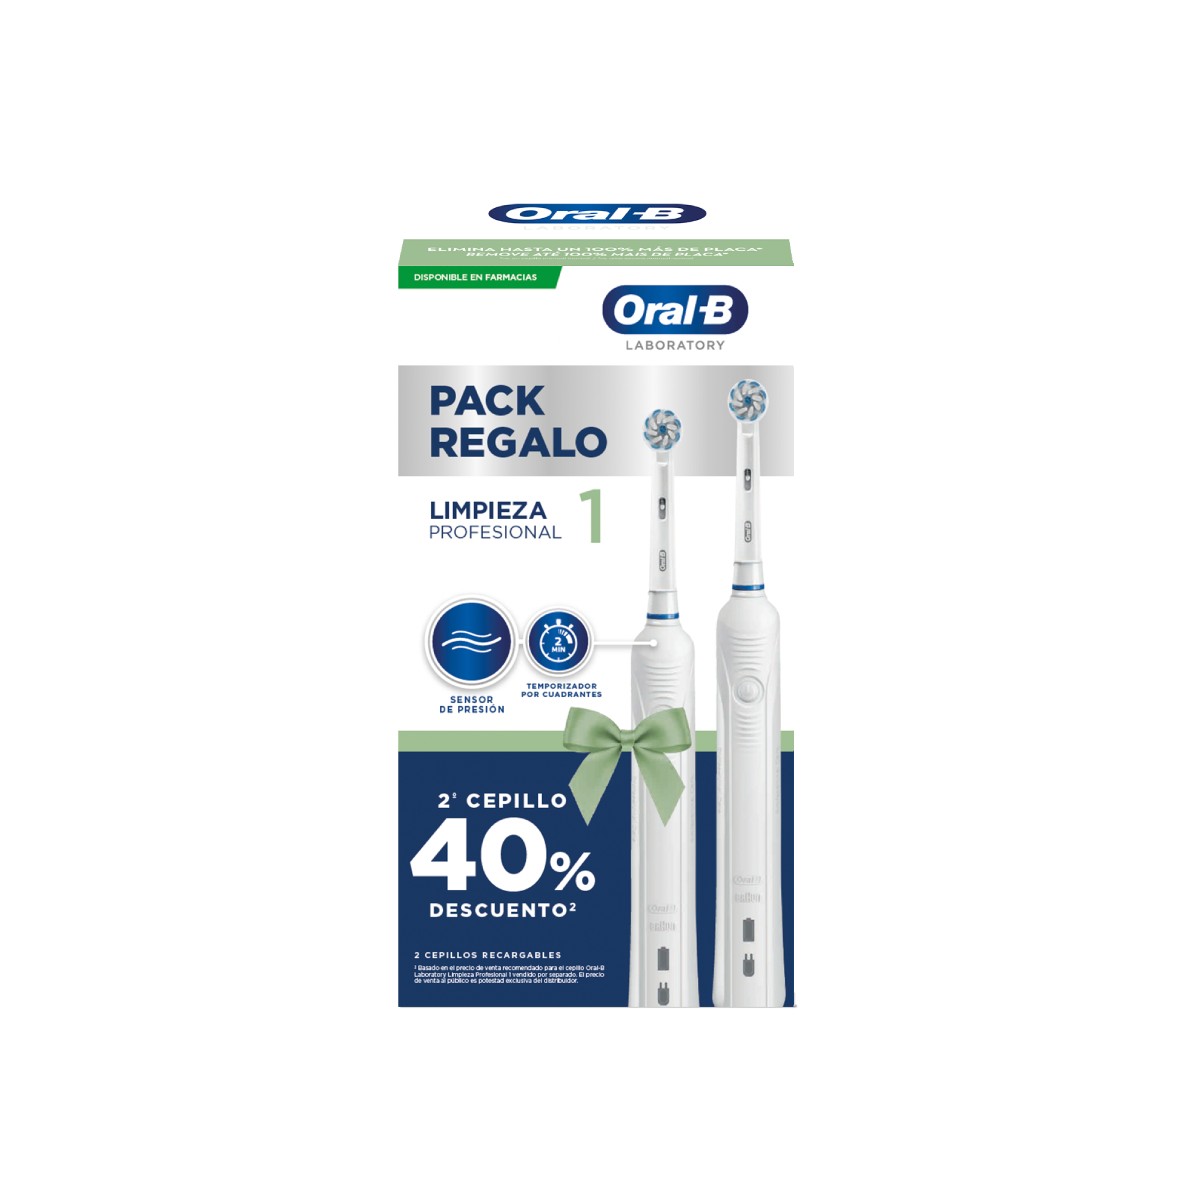 Oral B cepillo eléctrico Pro 1, duplo